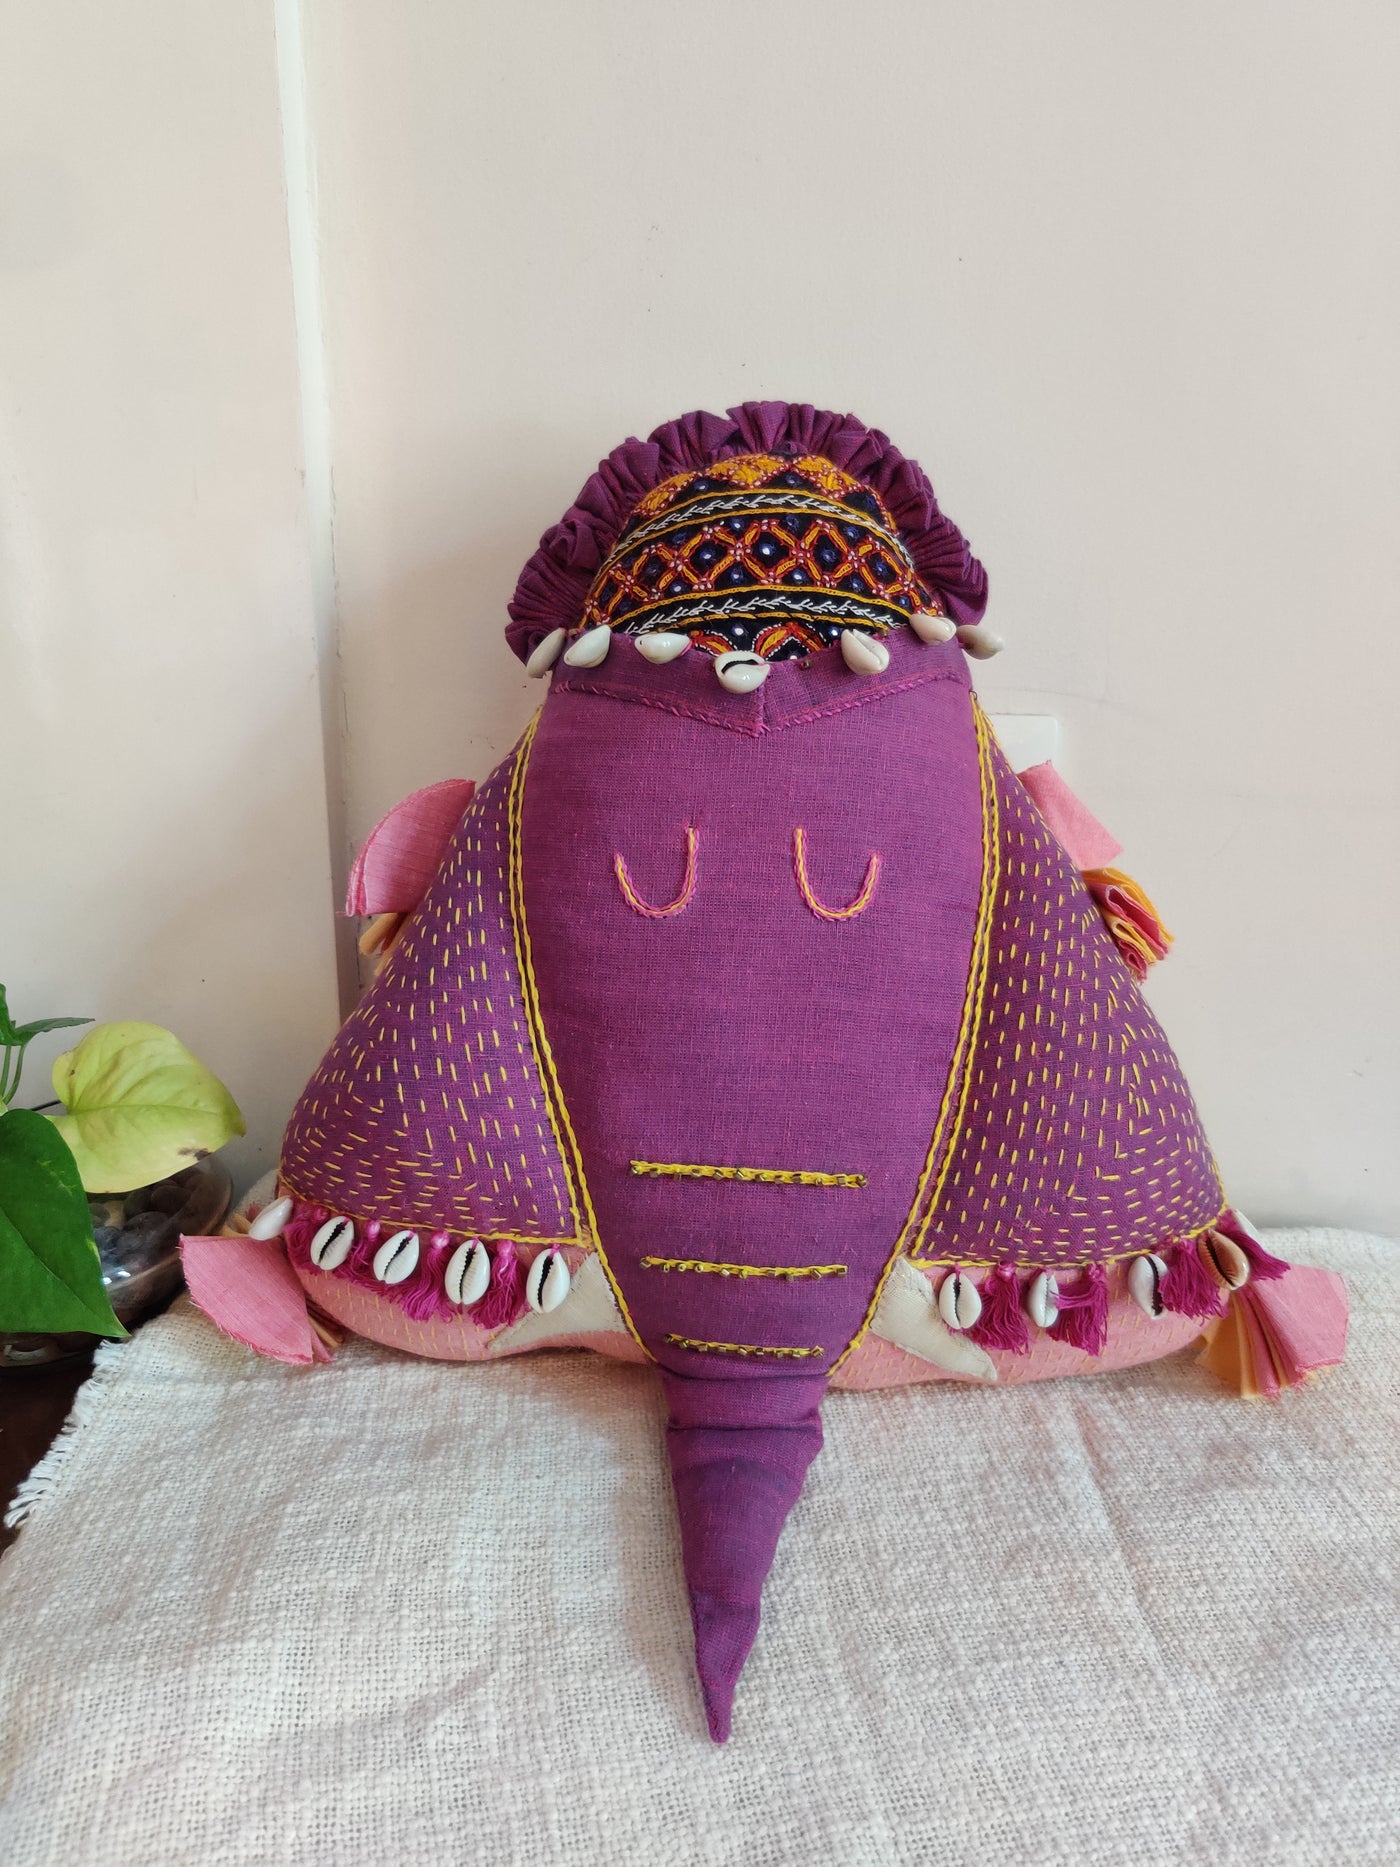 Elephant shaped purple cushion